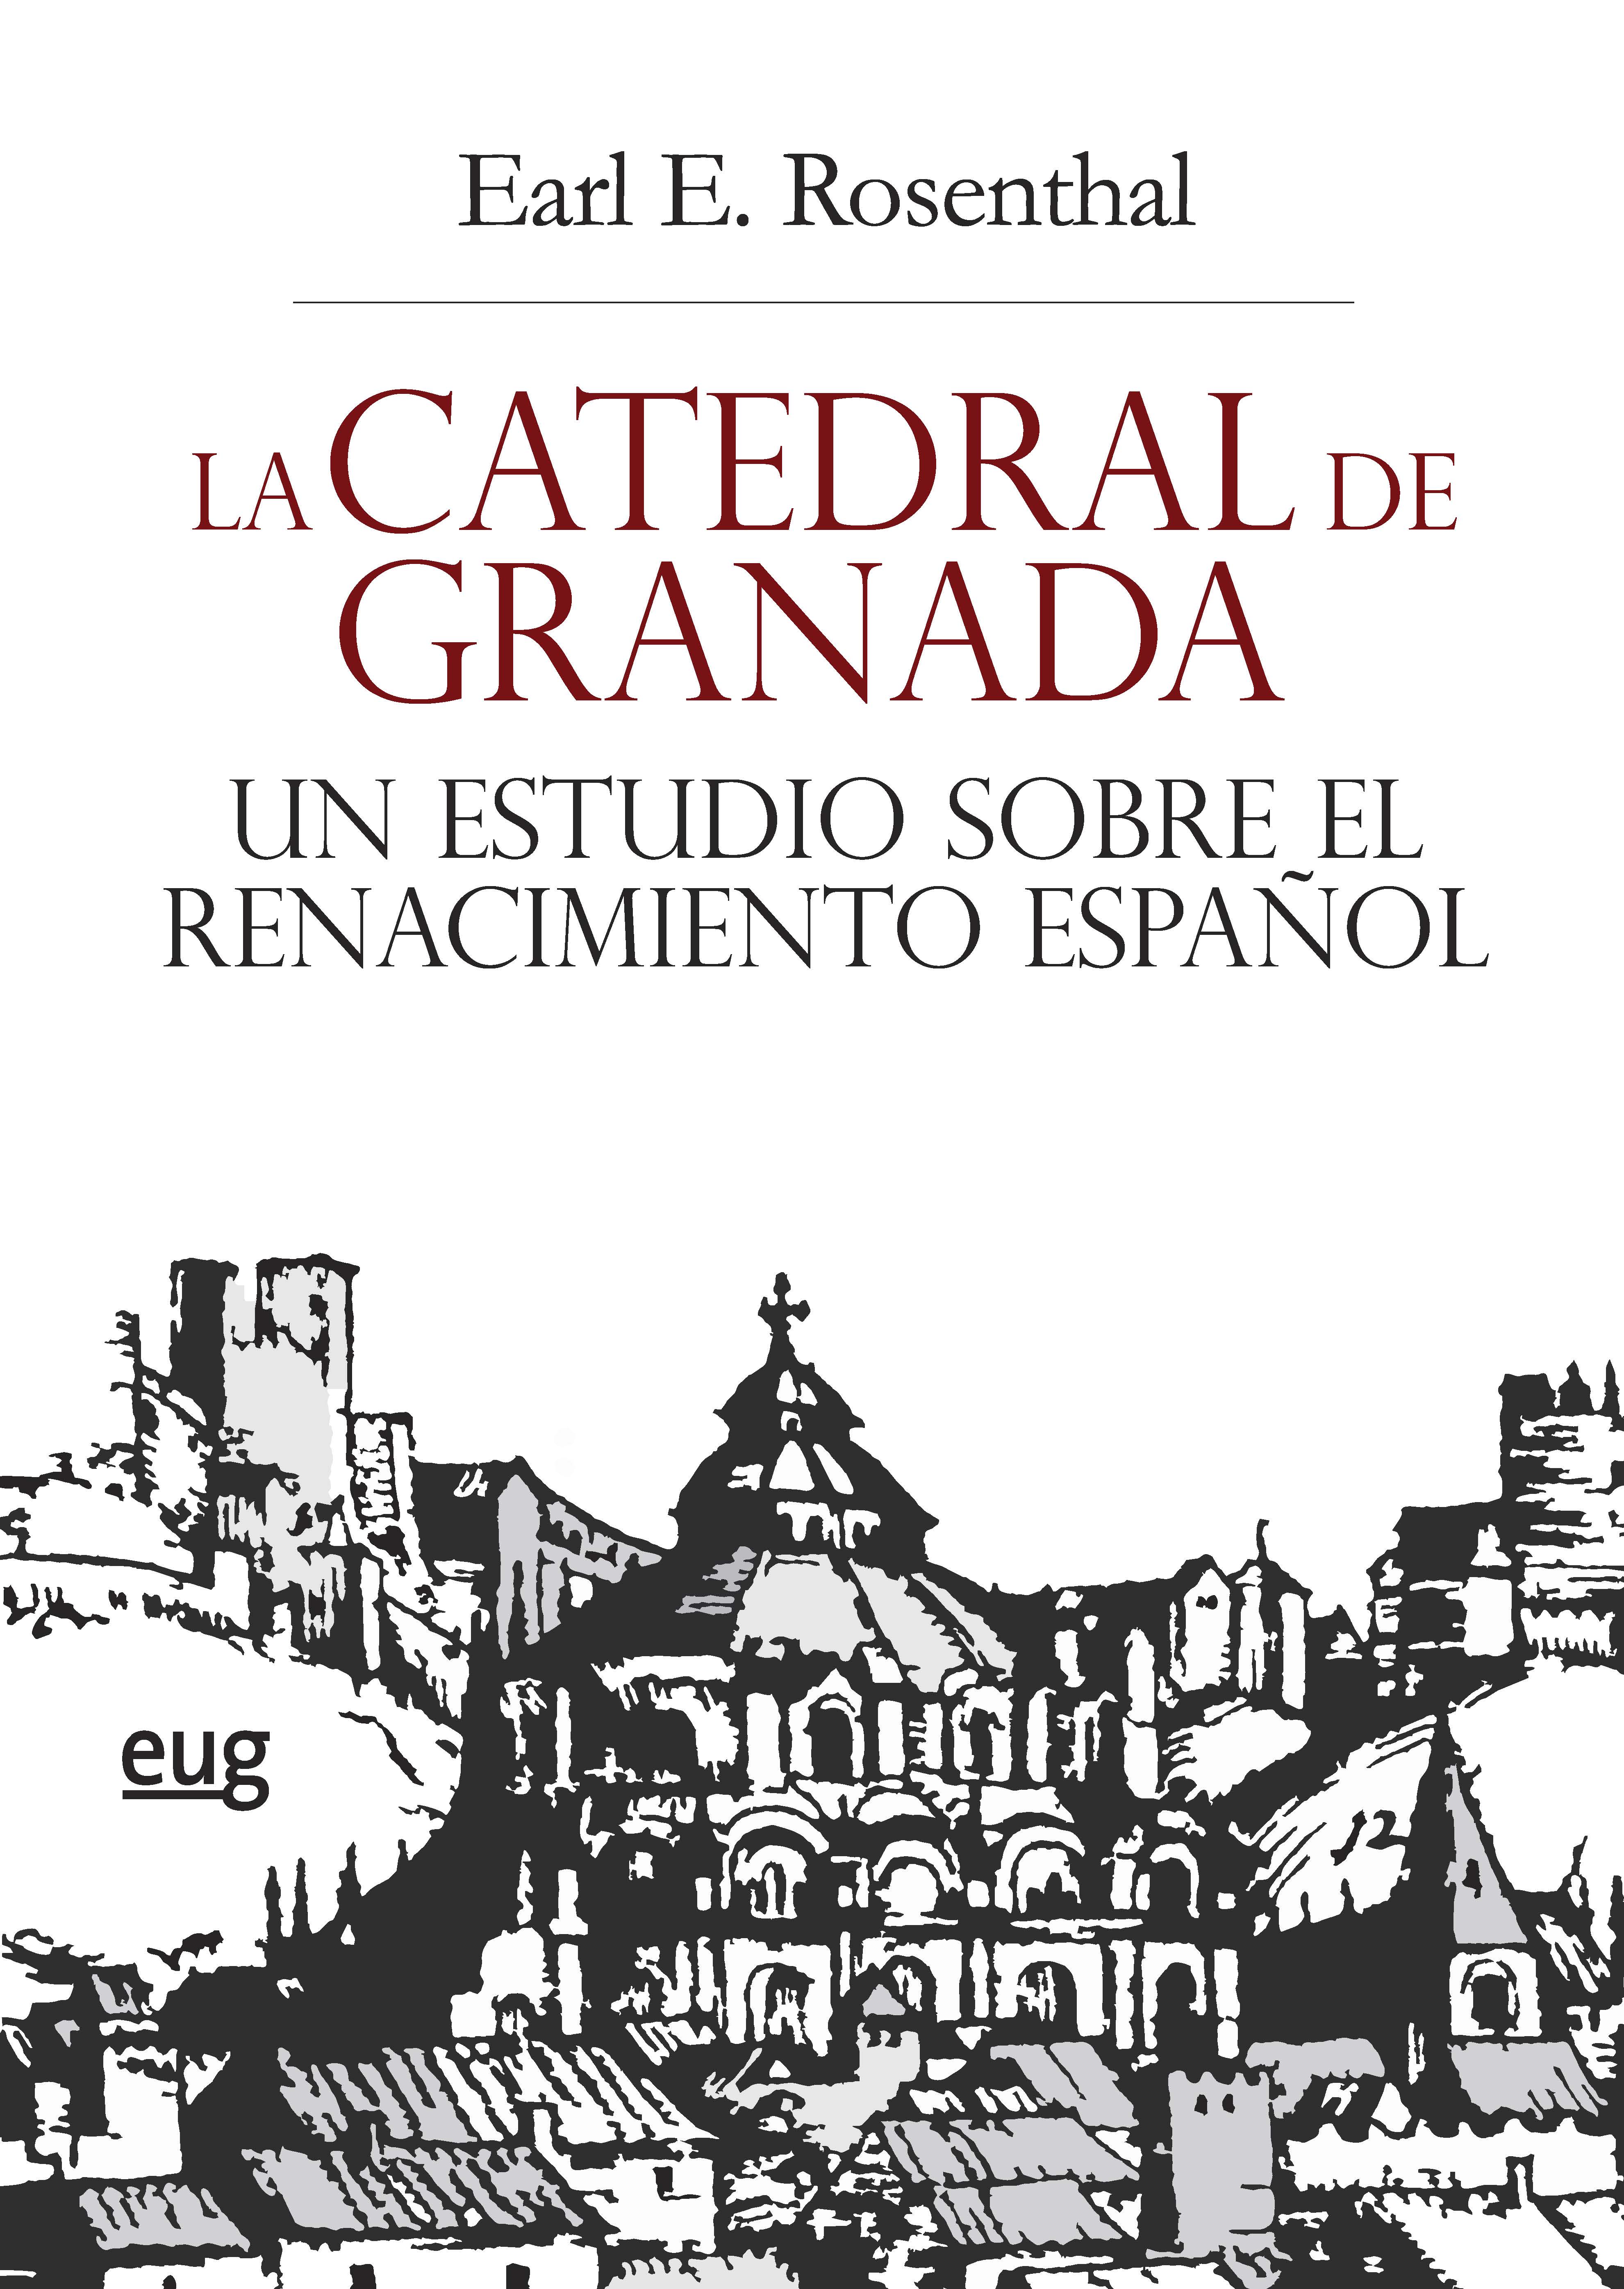 Portada del libro. Grabado de la Catedral de Granada